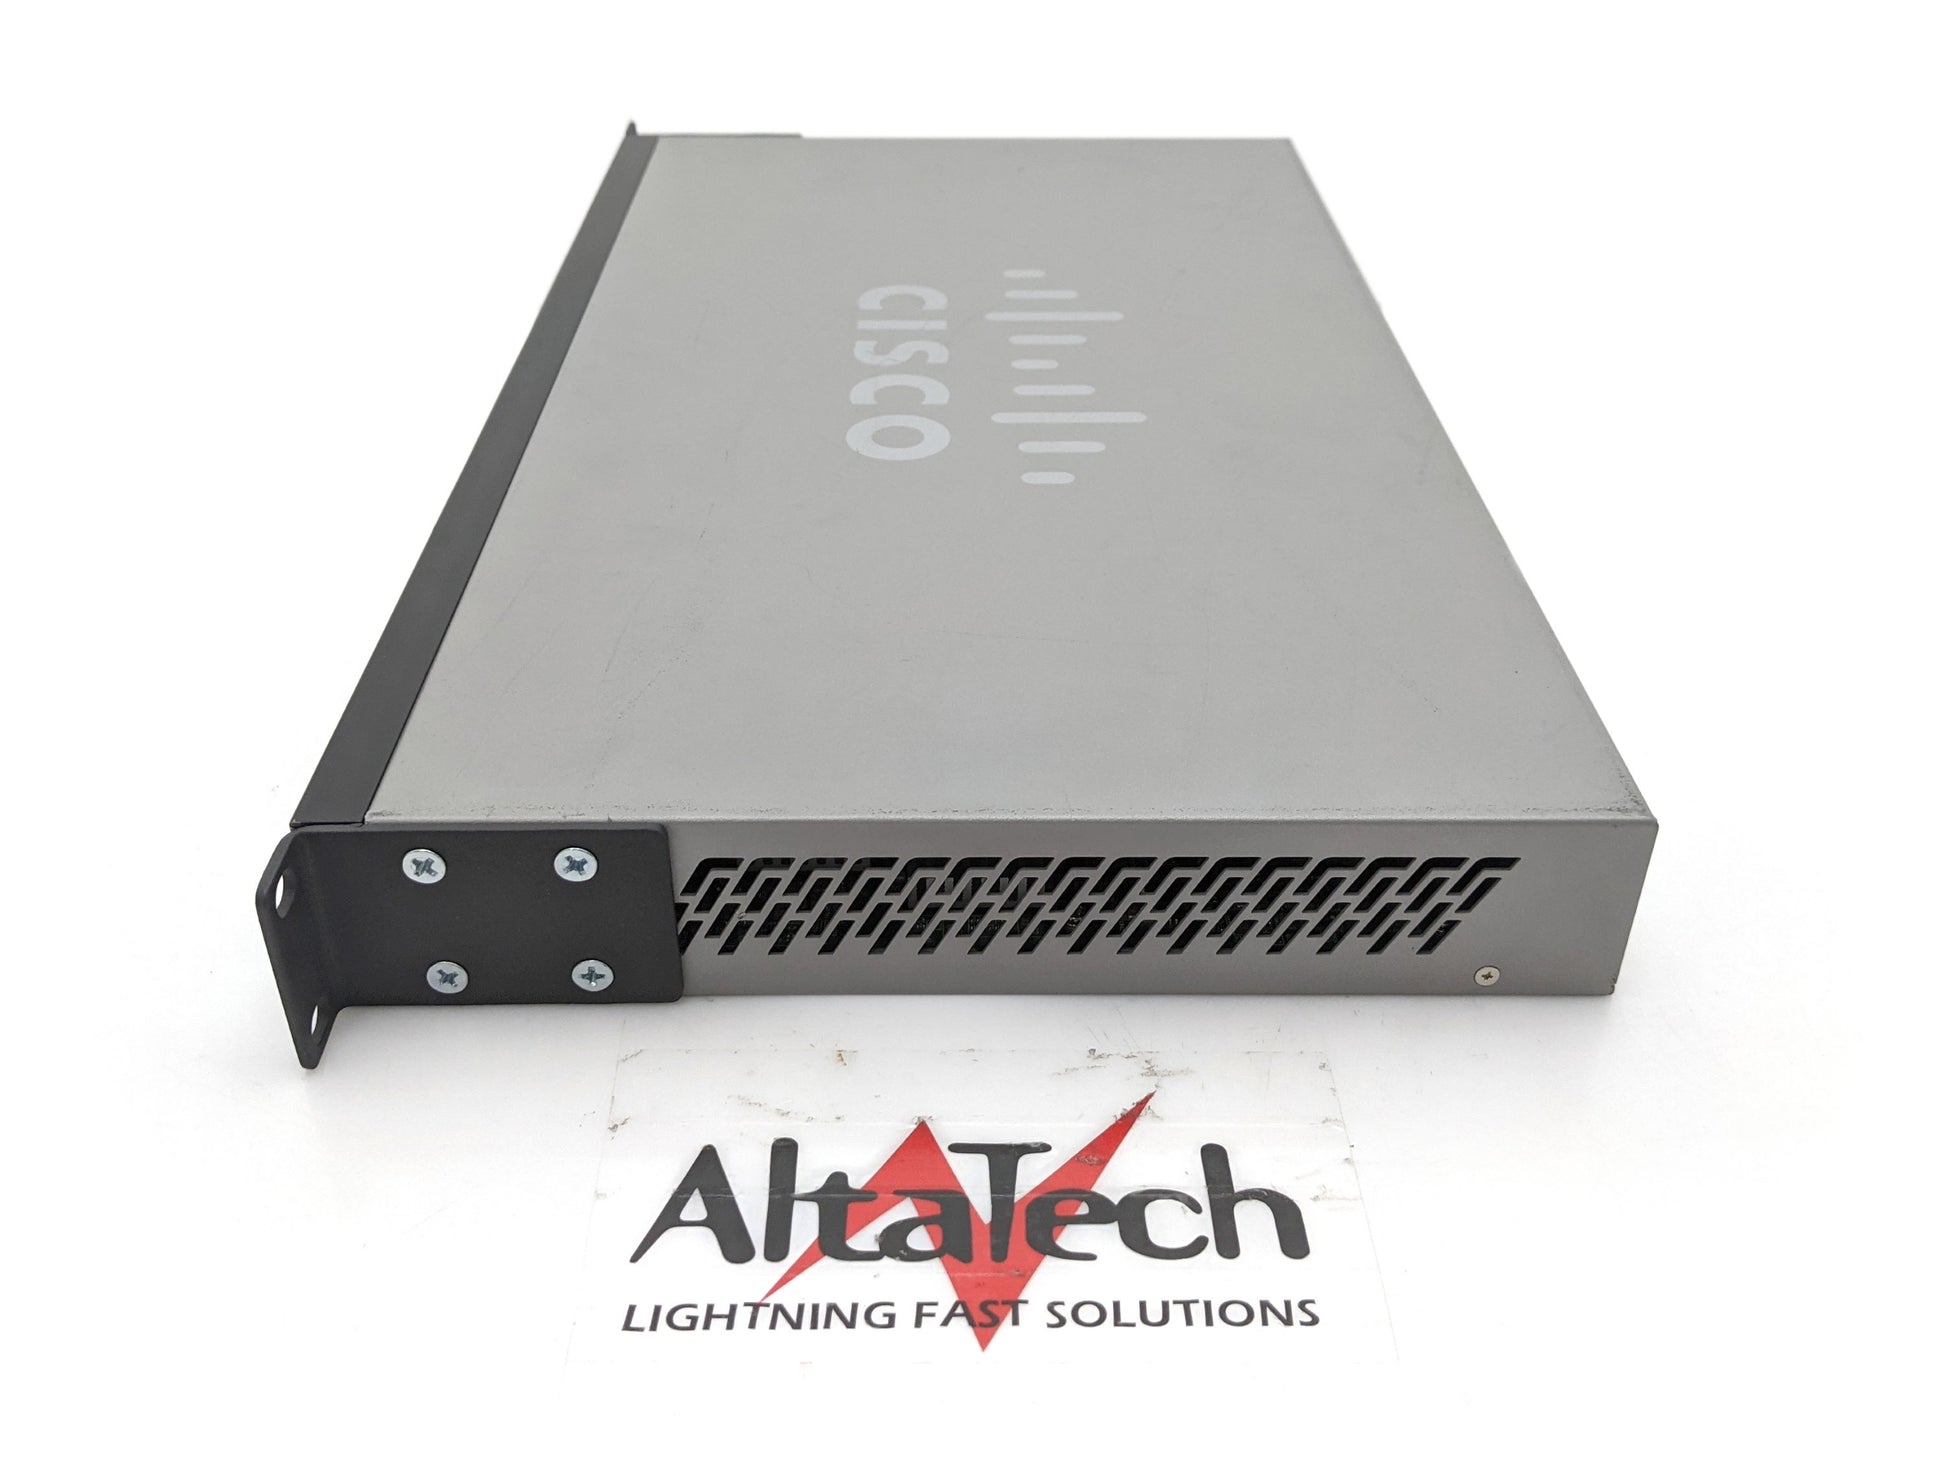 Cisco SG500X-48-K9 48x 1Gbps RJ-45, 4x 10GBE SFP+ Ethernet Switch, Used